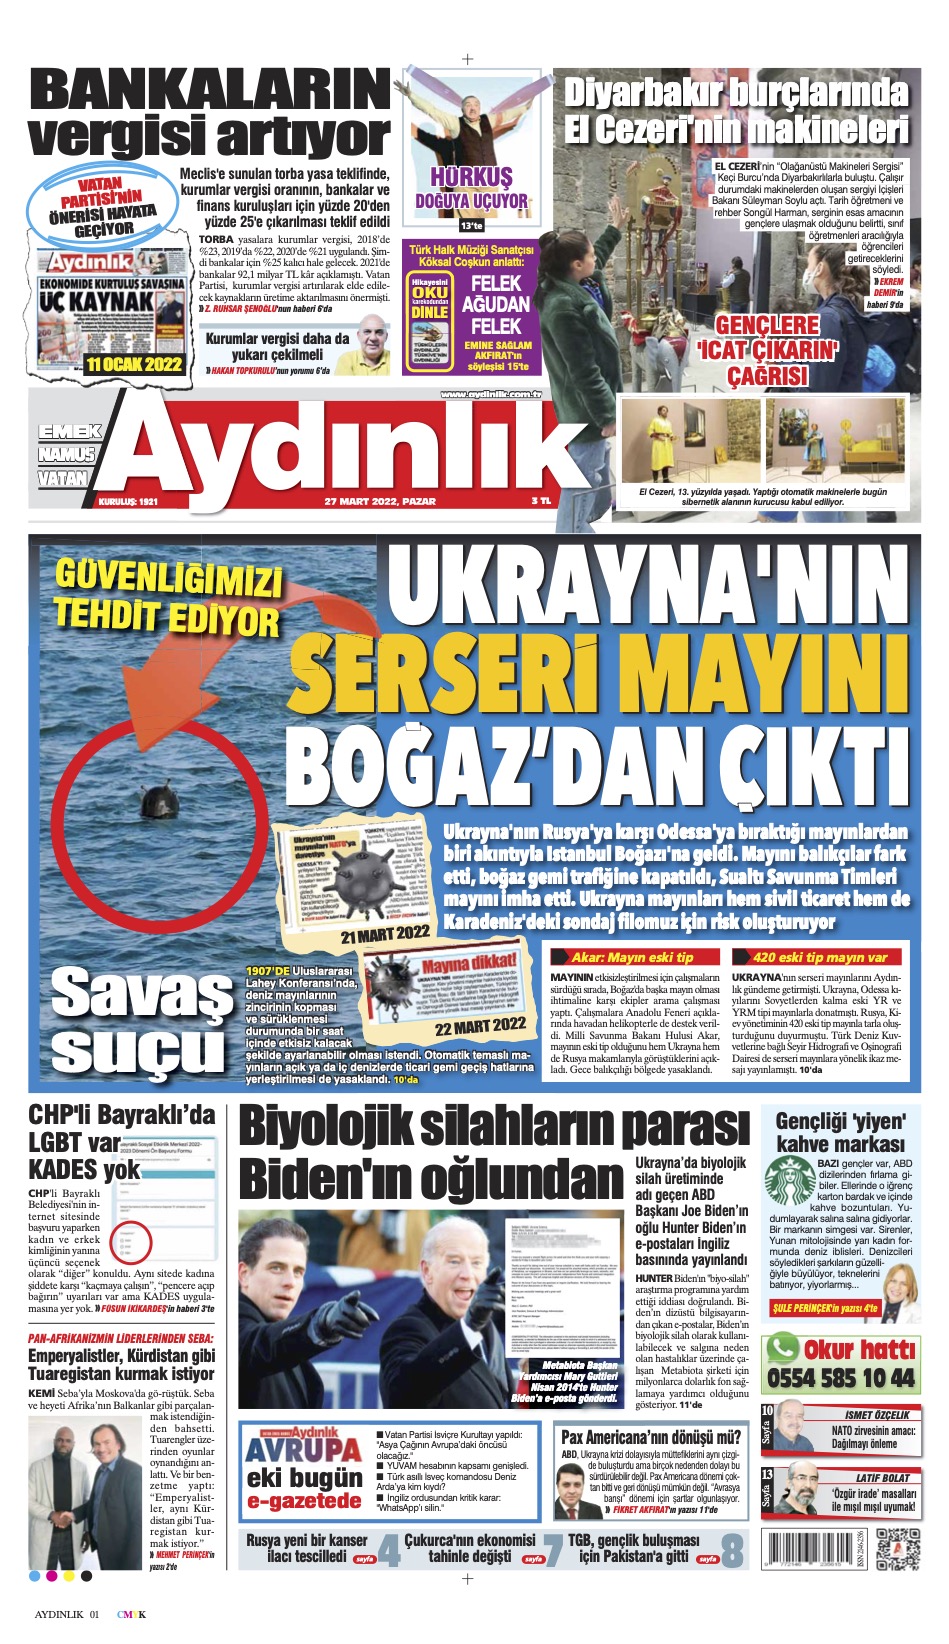 Aydınlık Gazetesi 27 Mart 2022 Kapak Sayfası Egazete